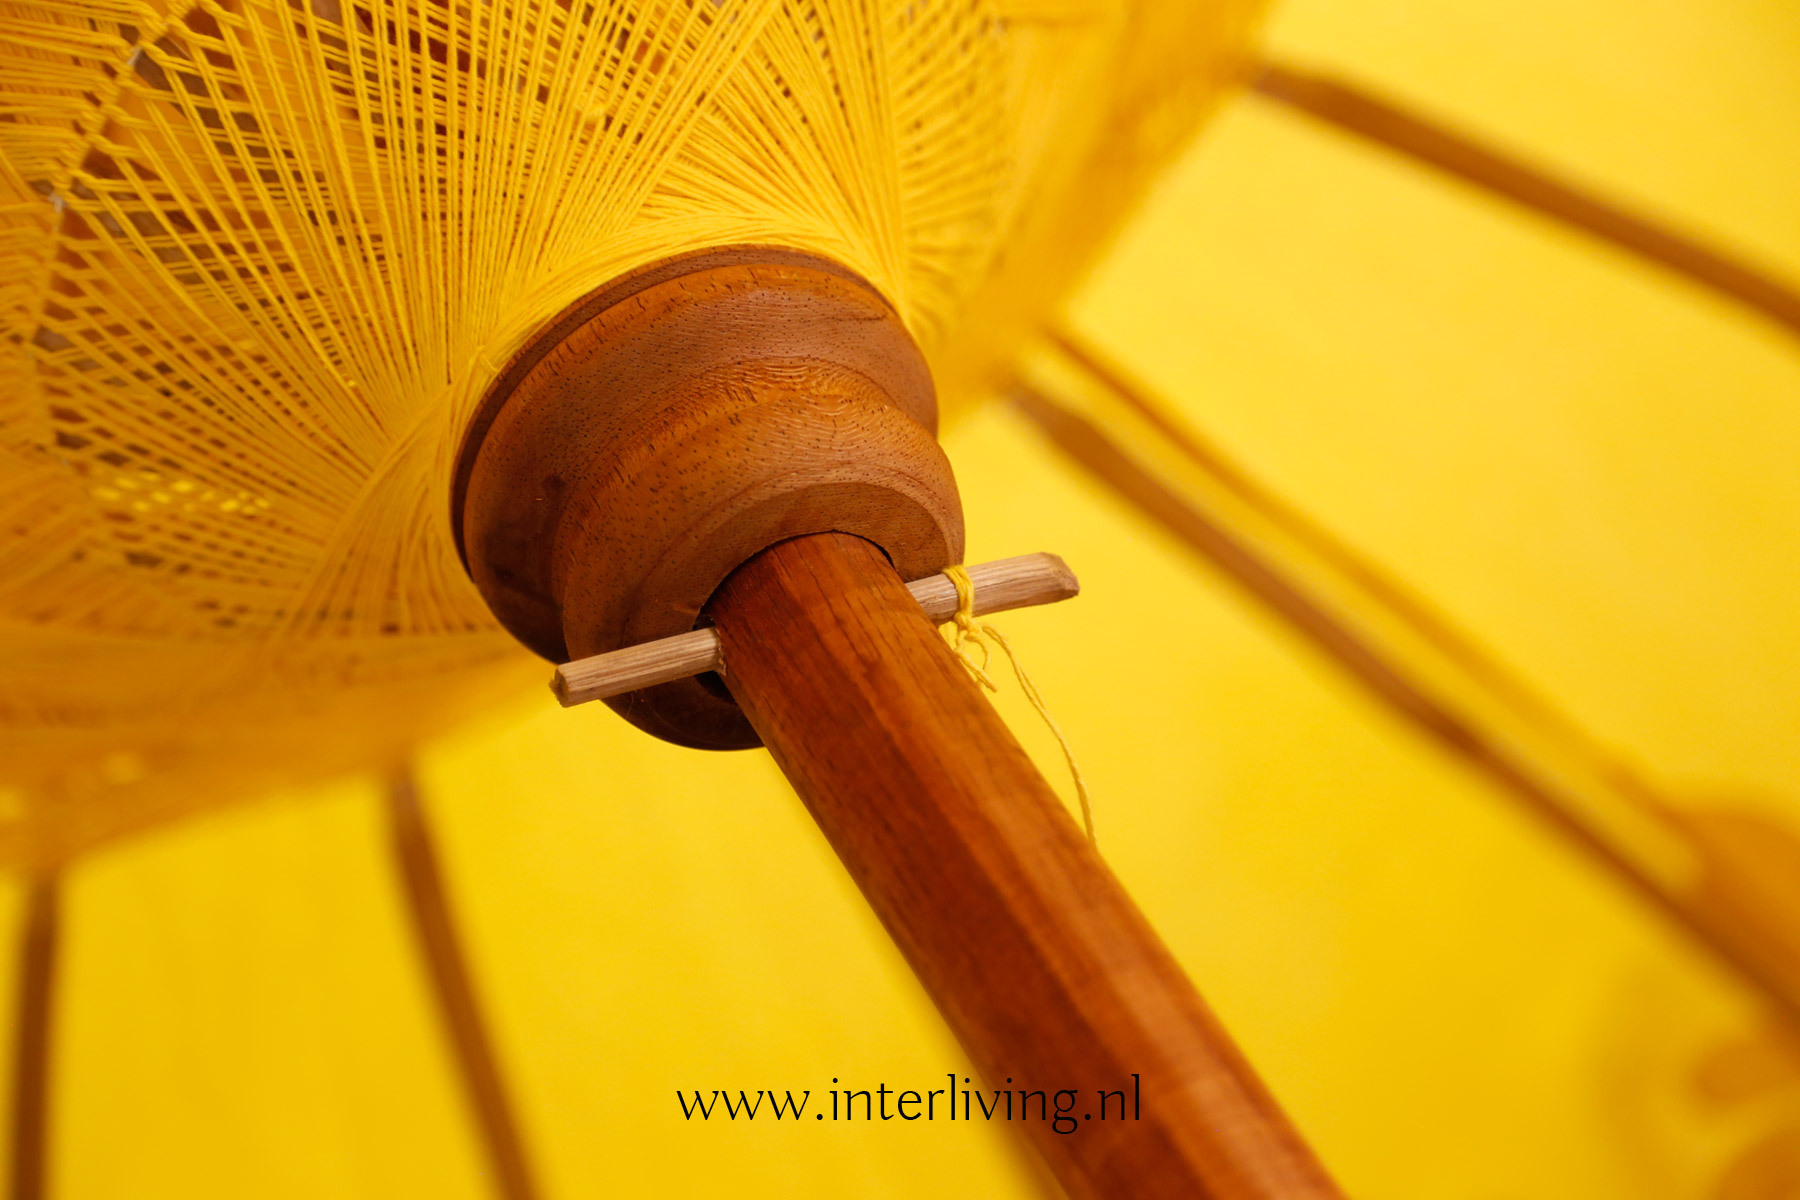 parasol uit Bali XL 200 cm - Balinese stijl met versierde fringed franje  rand en goud patronen - kleur wit / geel / groen / roze / paars en oranje -  handgemaakt met houten stok